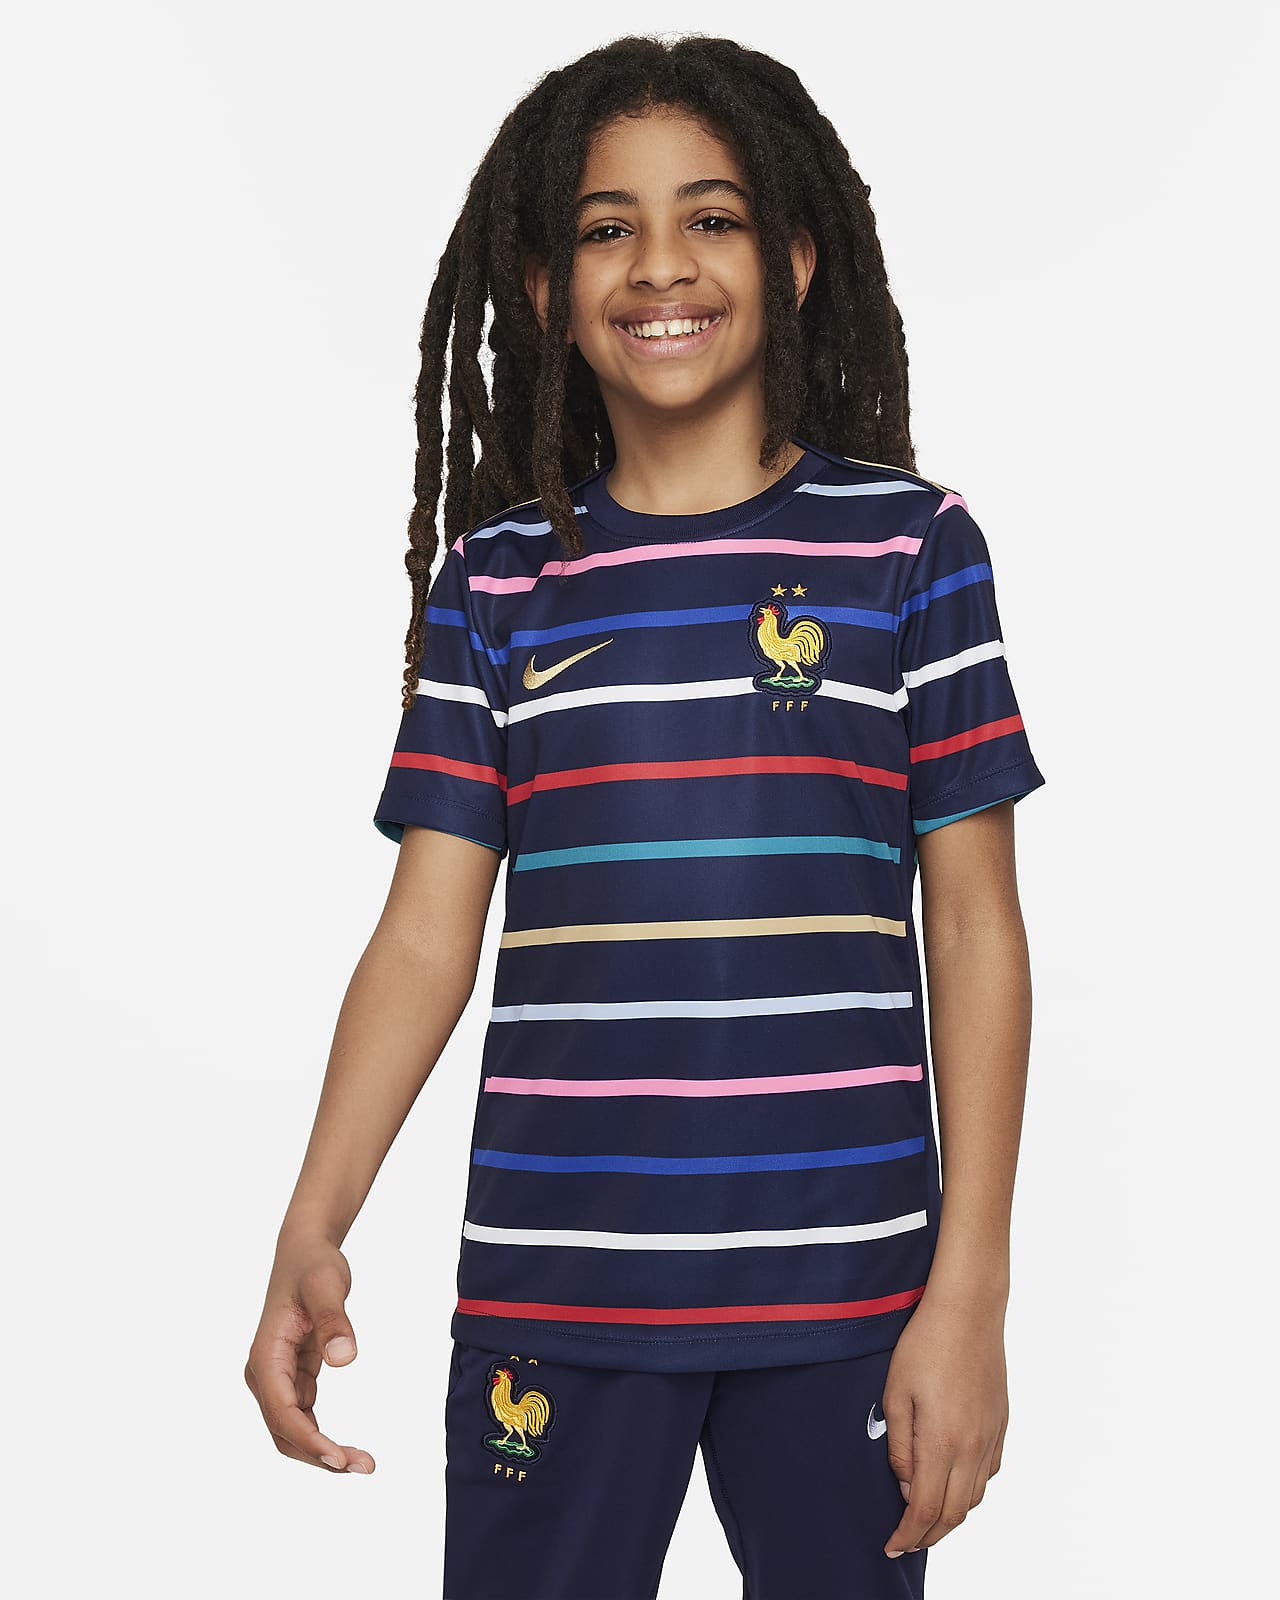 Předzápasové fotbalové tričko Nike Dri-FIT FFF Academy Pro pro větší děti, domácí